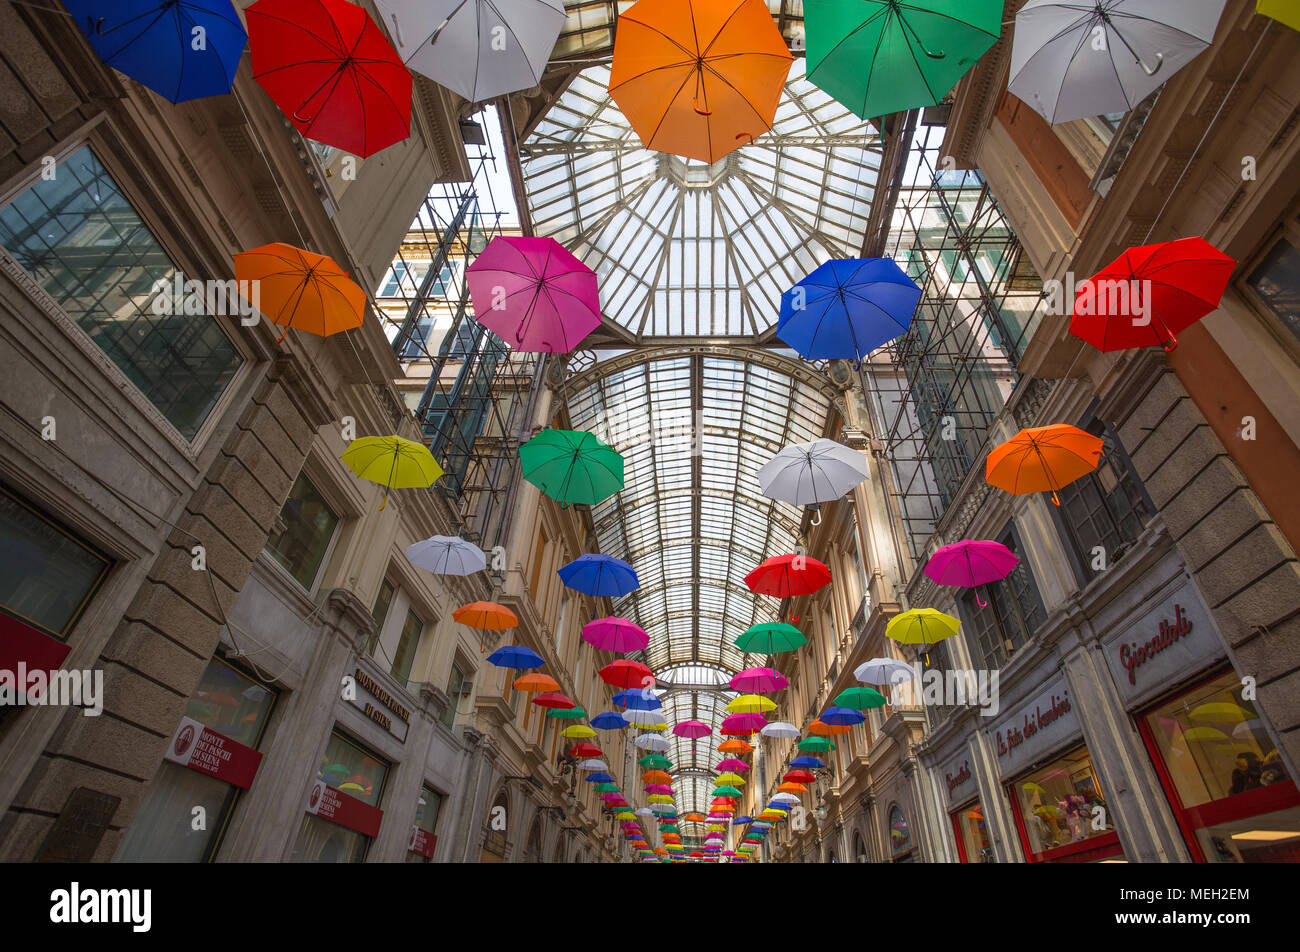 GENOA, ITALY, APRIL 16, 2018 - Multicolored umbrellas in the sky above Galleria Mazzini in the center of Genoa, Italy. Stock Photo